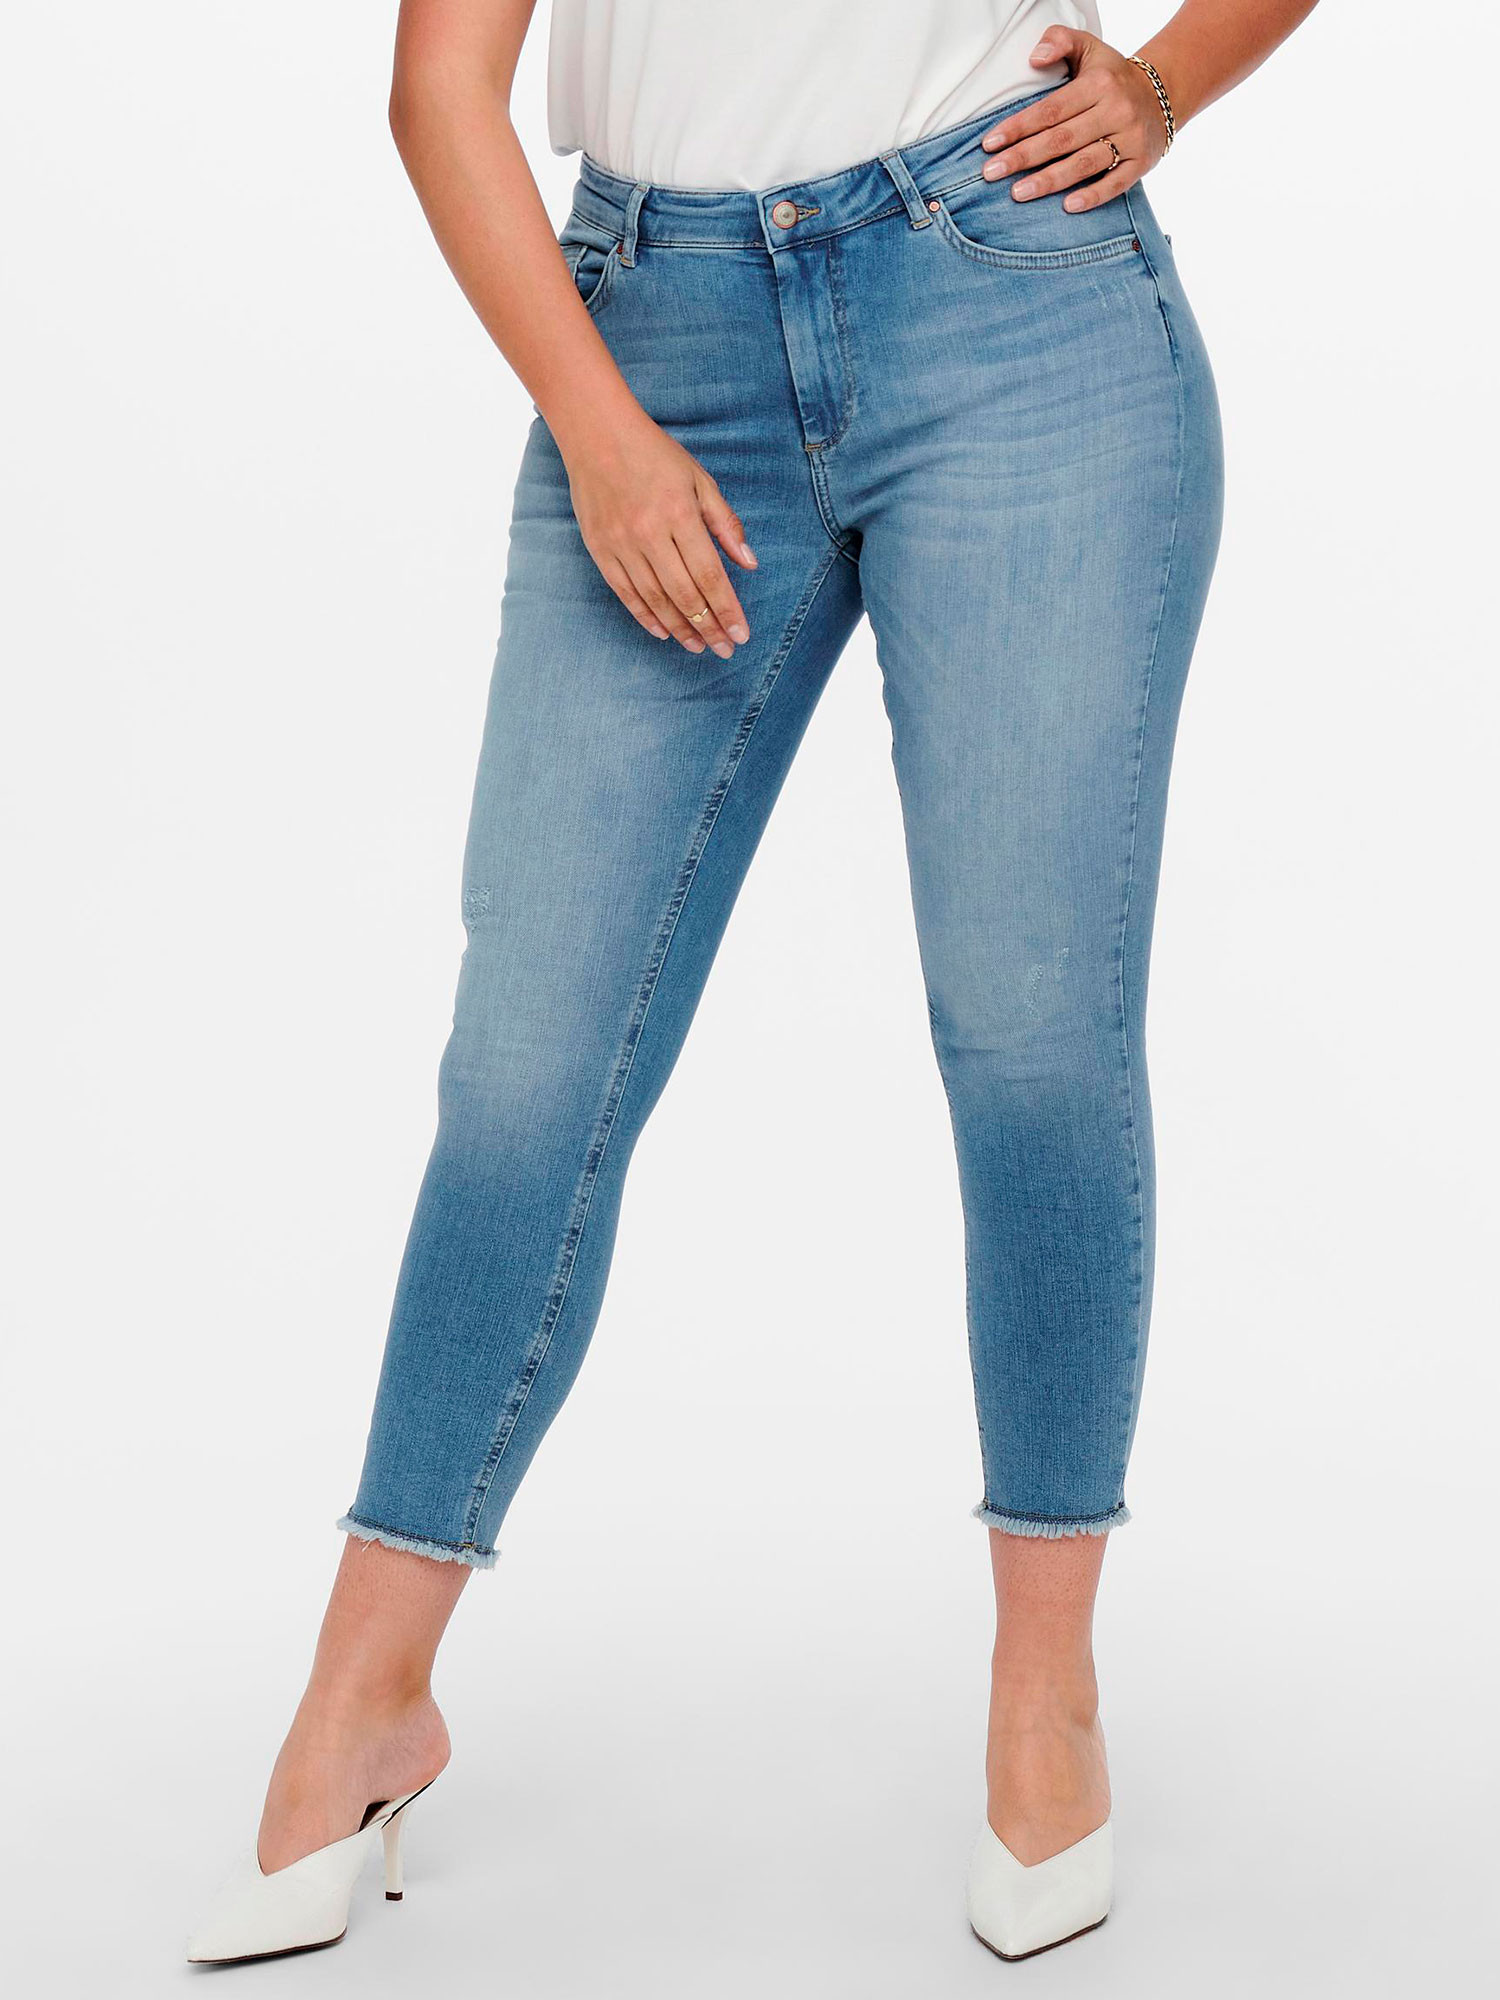 AUGUSTA - Lyseblå jeans med benlengde 32